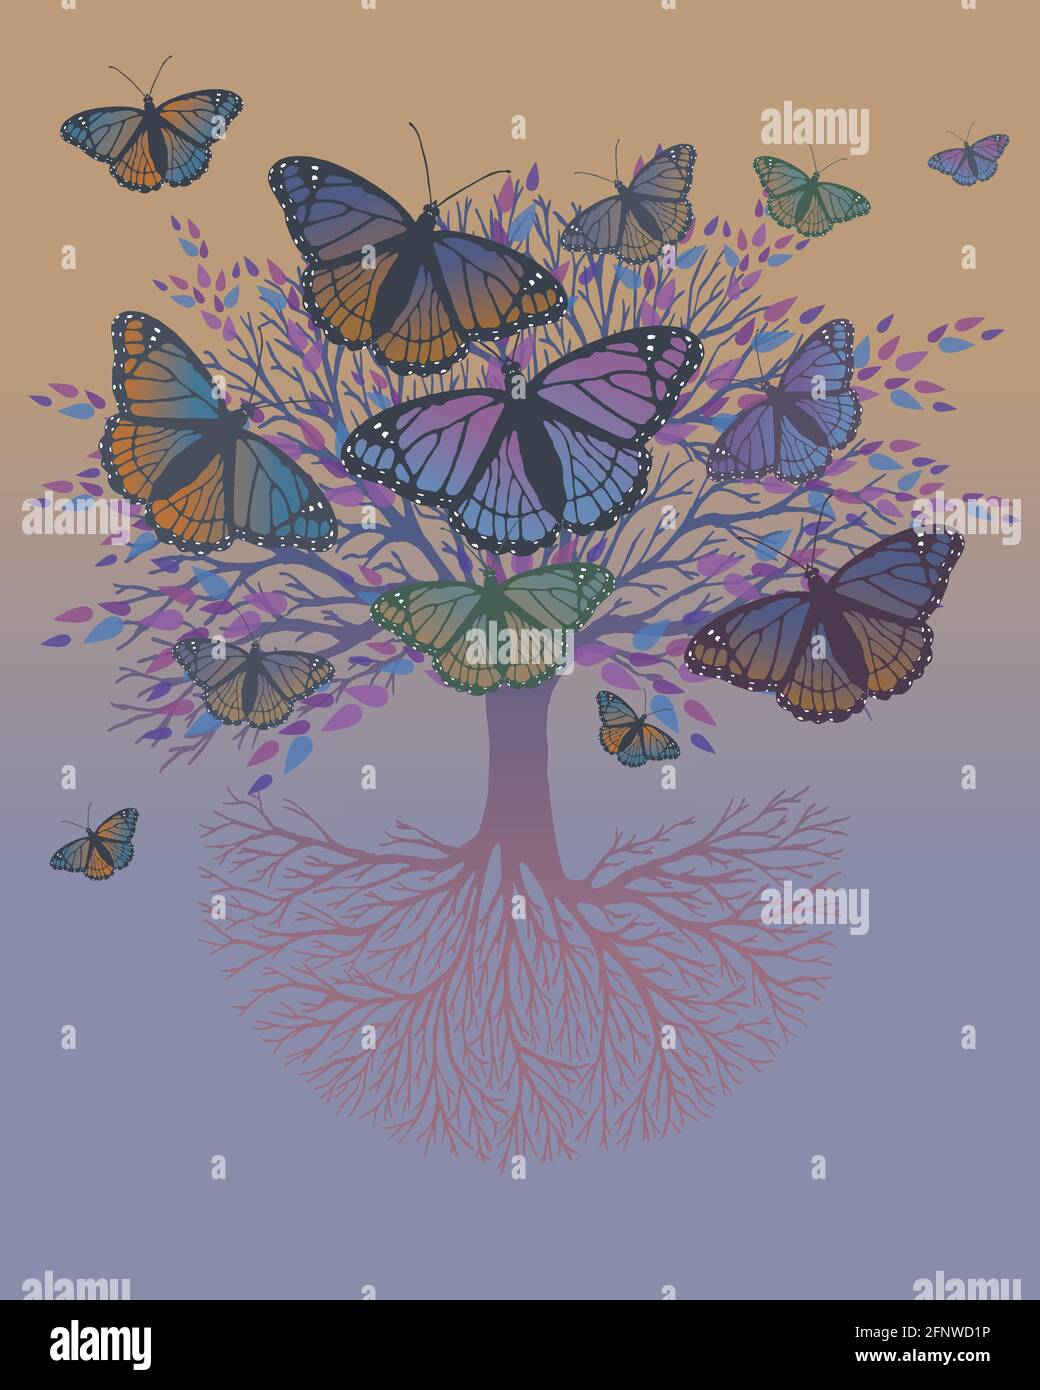 Un albero di vita con farfalle che si siedono sui rami e che volano intorno all'albero. Lo sfondo è un gradiente verde arancione viola Illustrazione Vettoriale